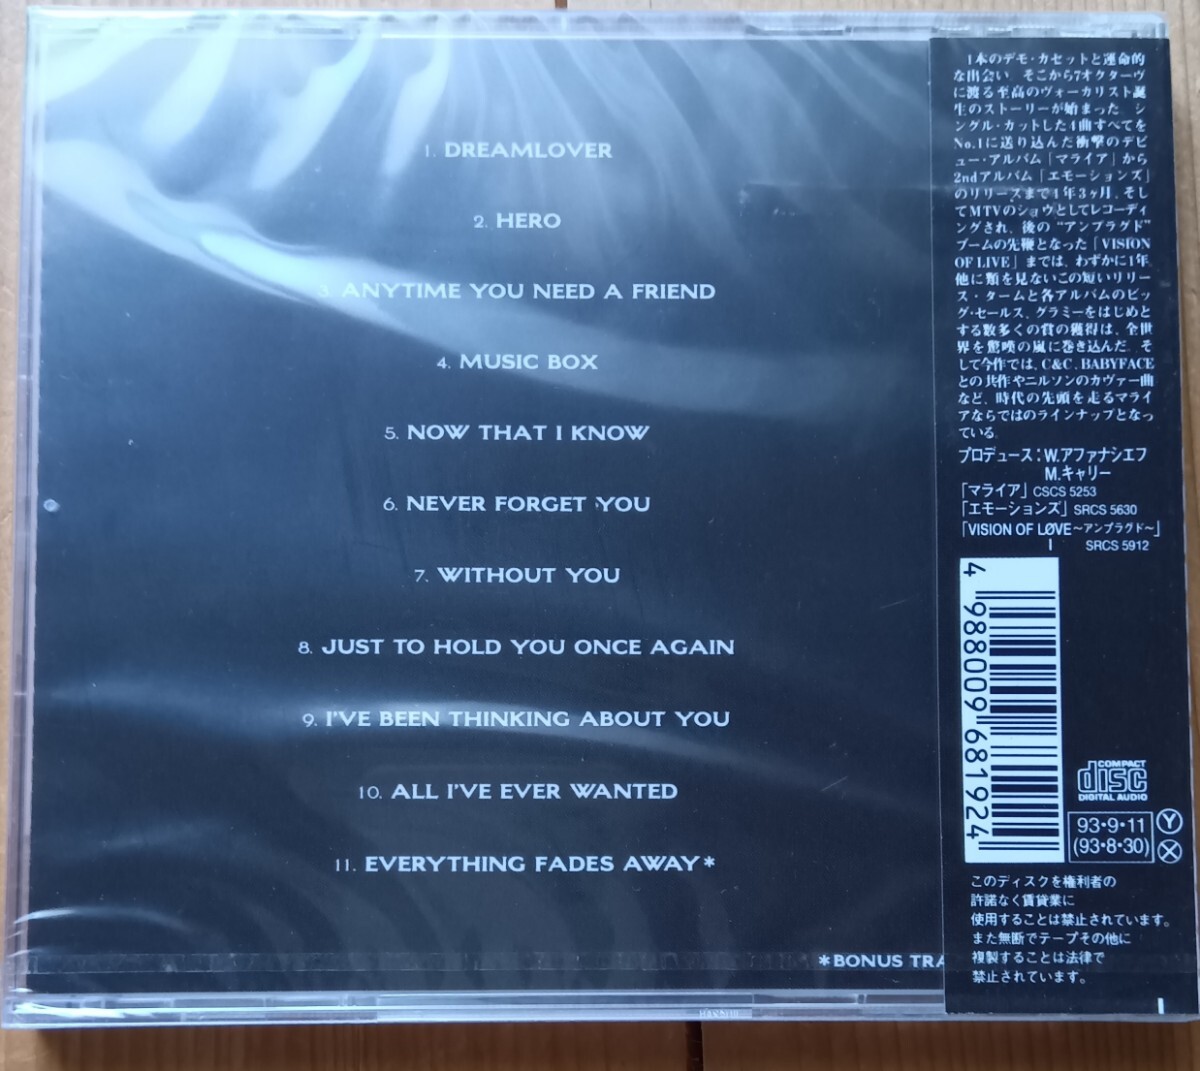 malaia* Carry |MARIAH CAREY [MUSIC BOX] записано в Японии SRCS-6819 новый товар нераспечатанный товар 